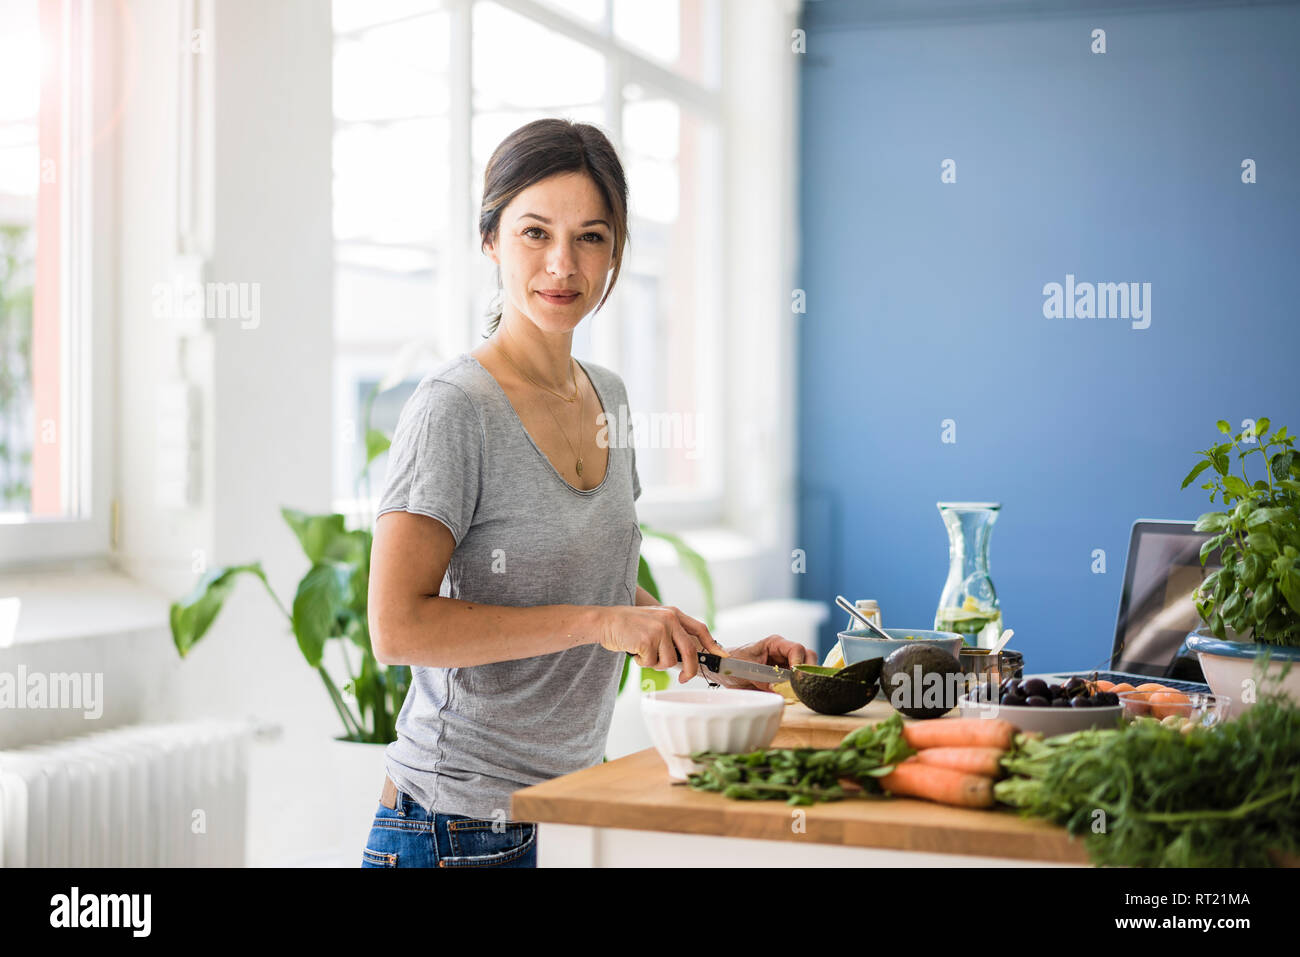 La donna la preparazione di un alimento sano nella sua cucina Foto Stock